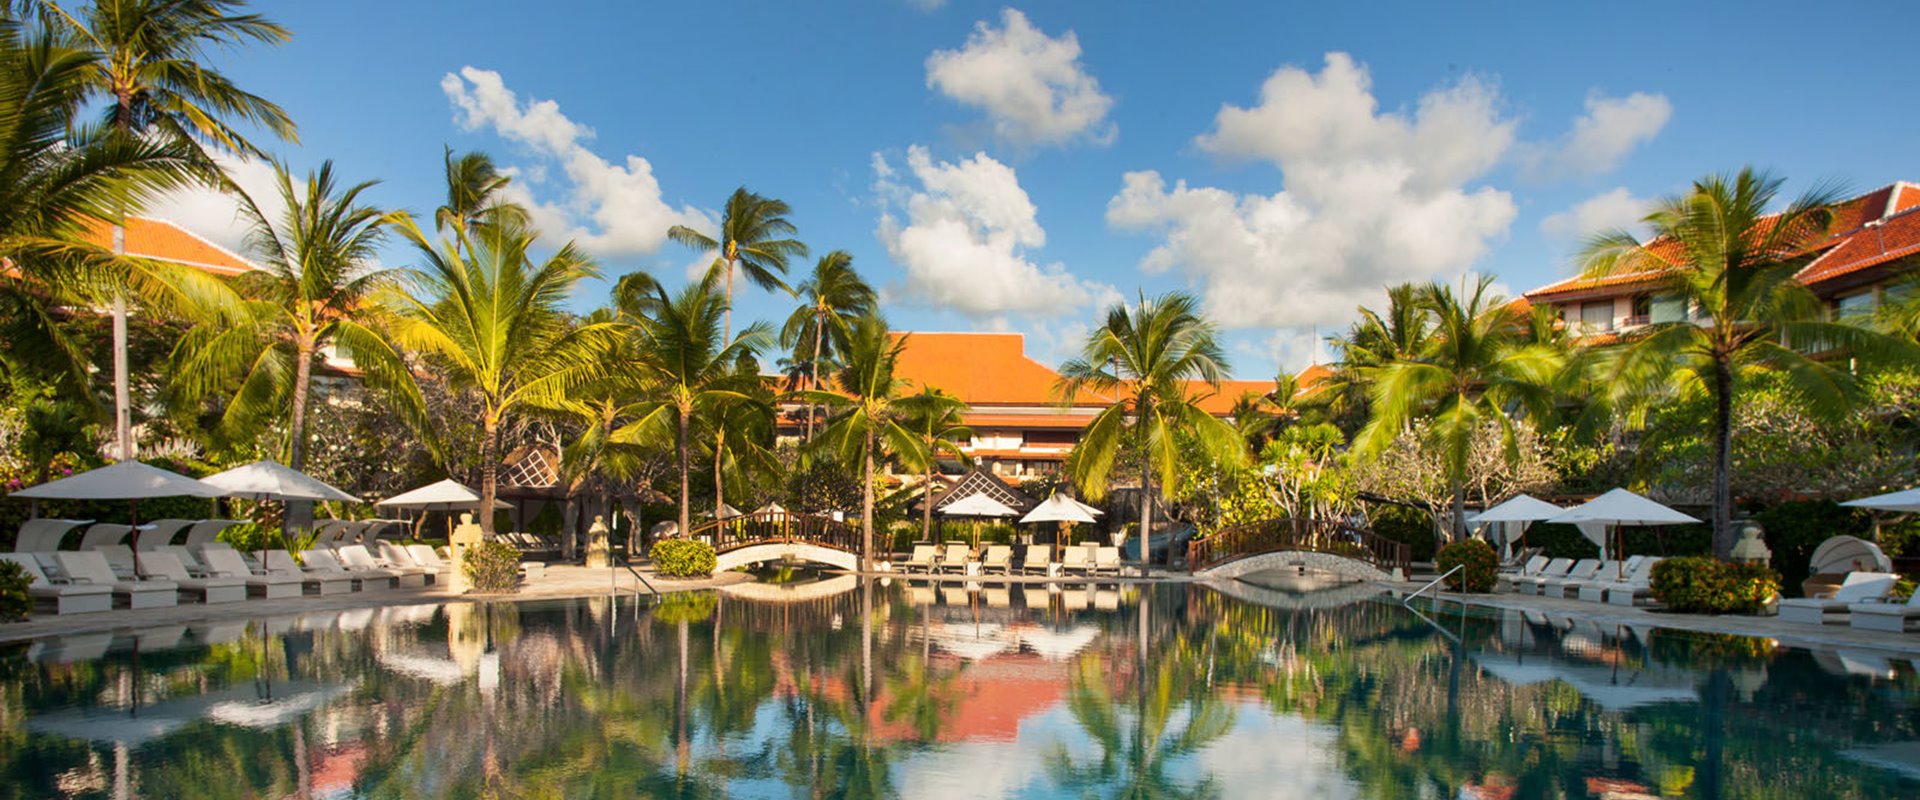 The Westin Resort Nusa Dua | Conference Venues Bali